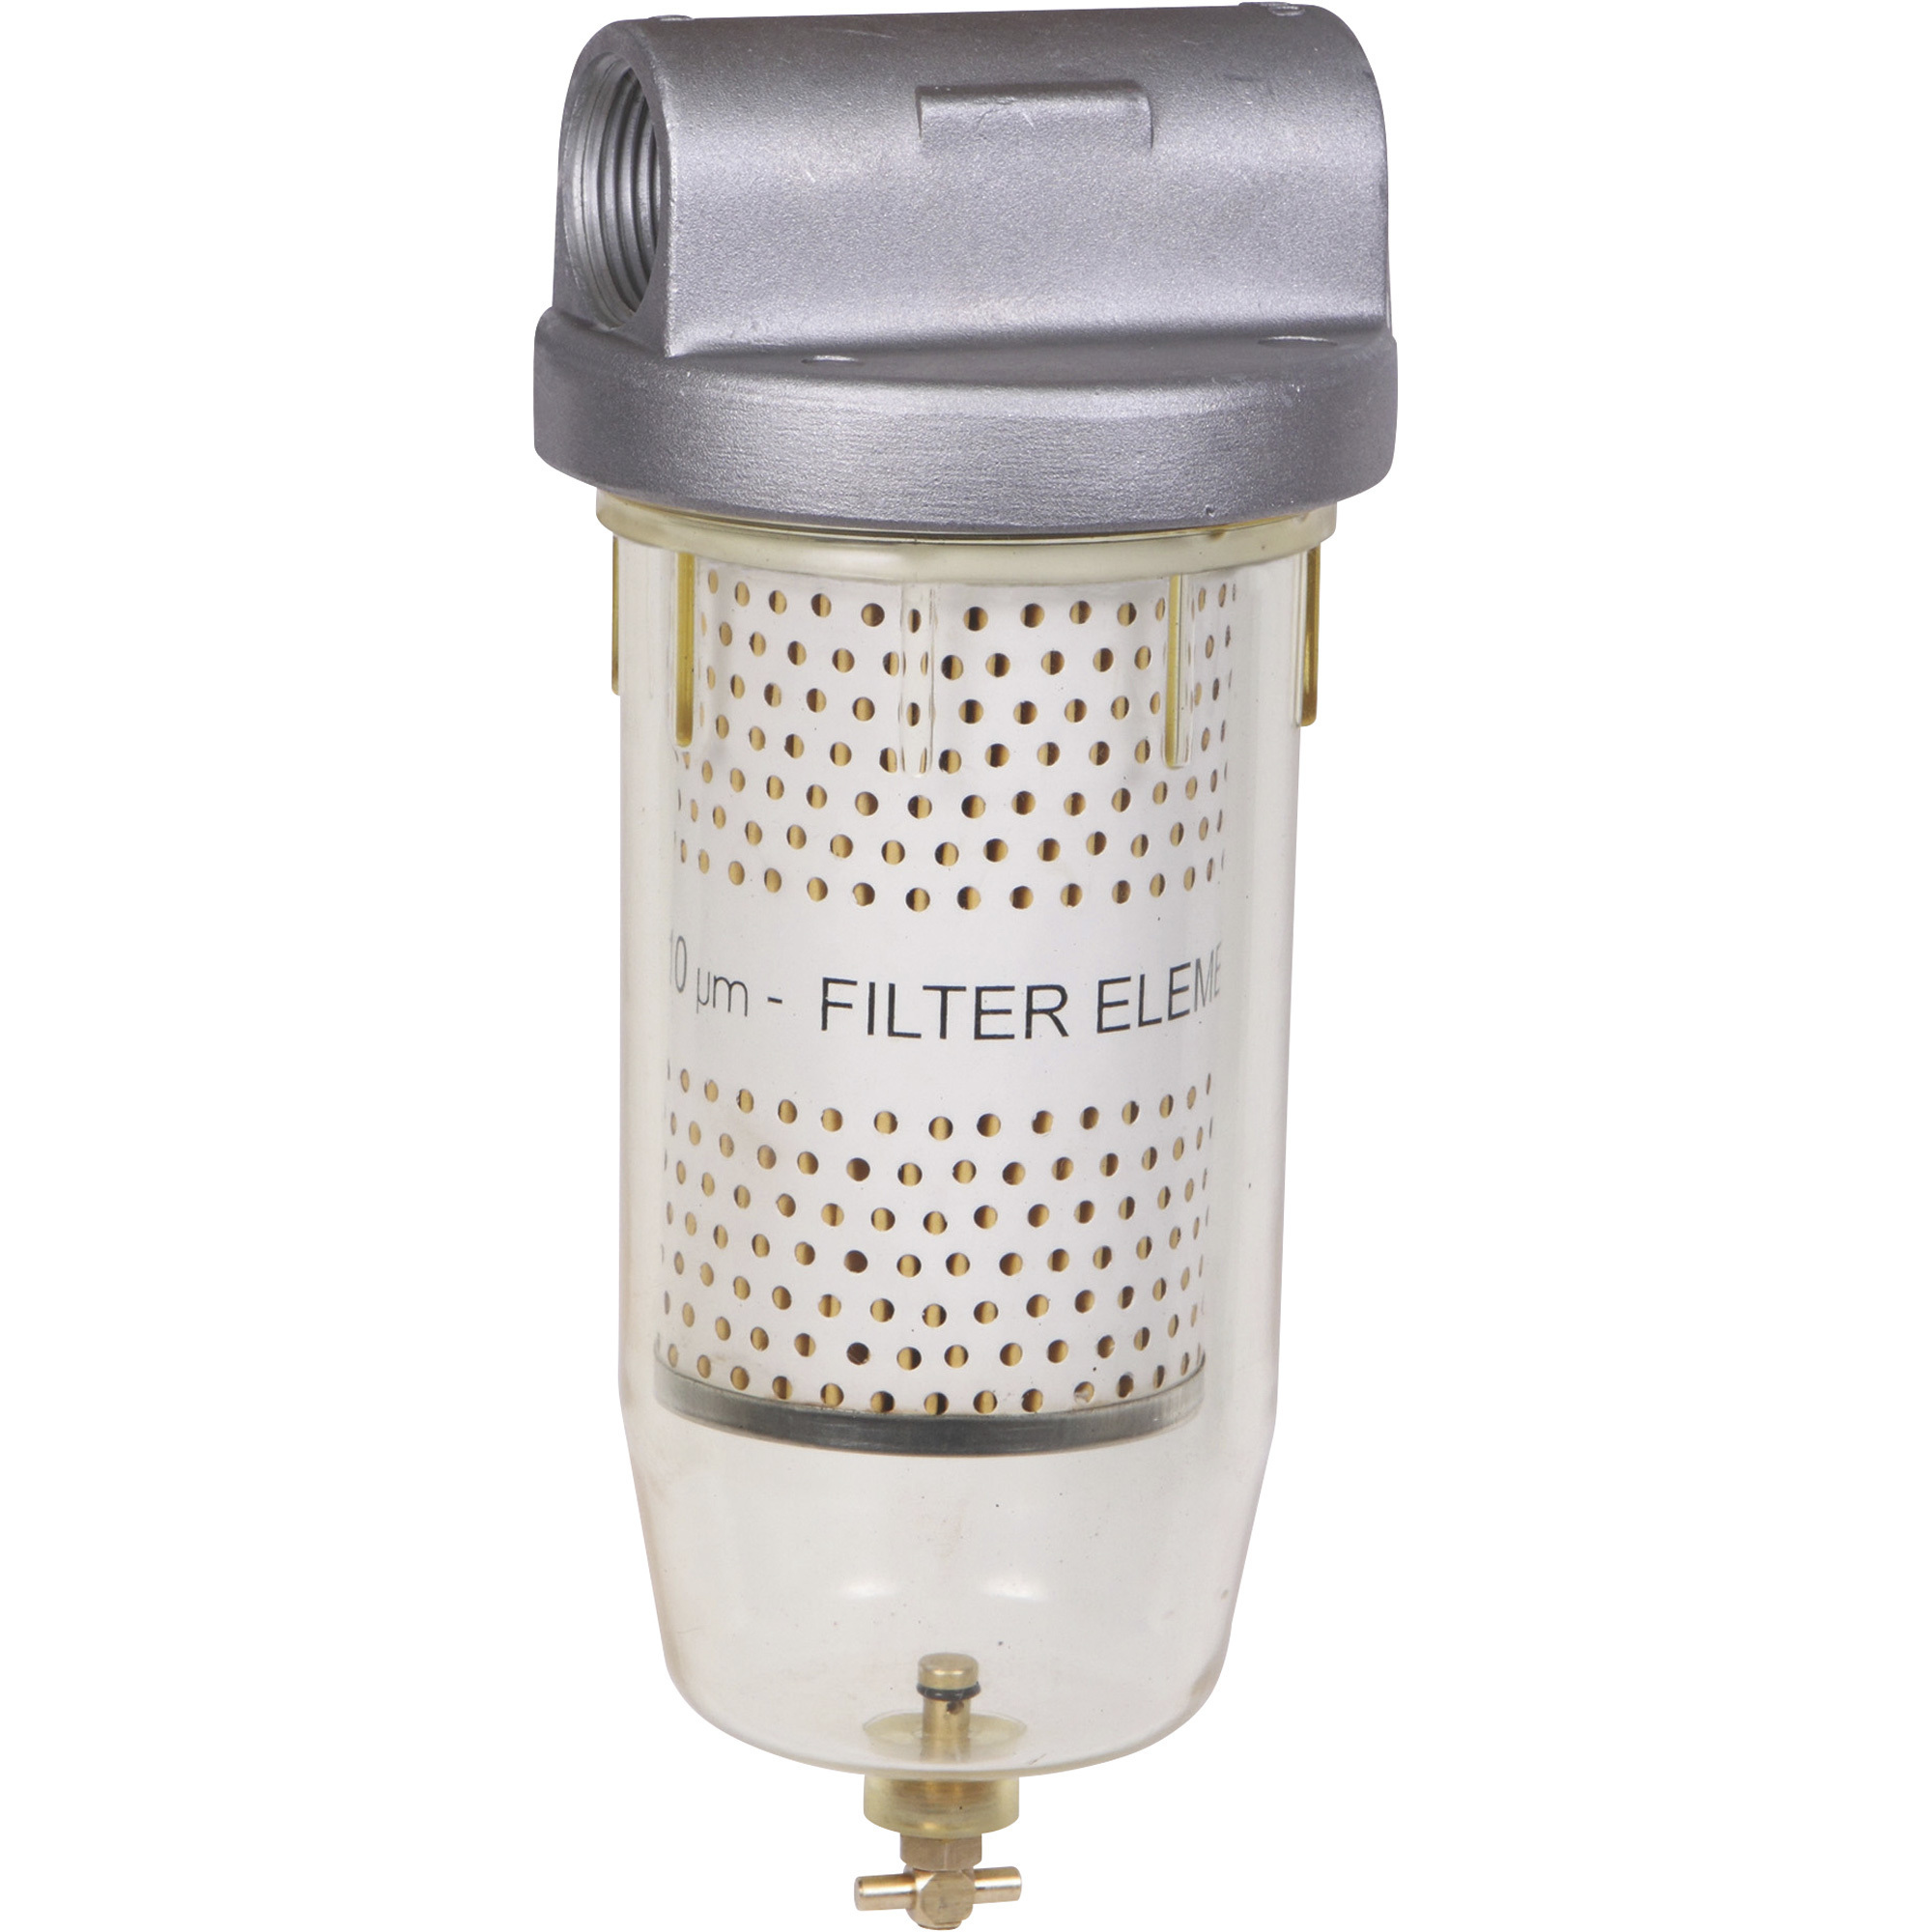 GROZ Fuel Filter, 10 Micron, 5 GPM, 1Inch NPT (F), Model FFL/01/N